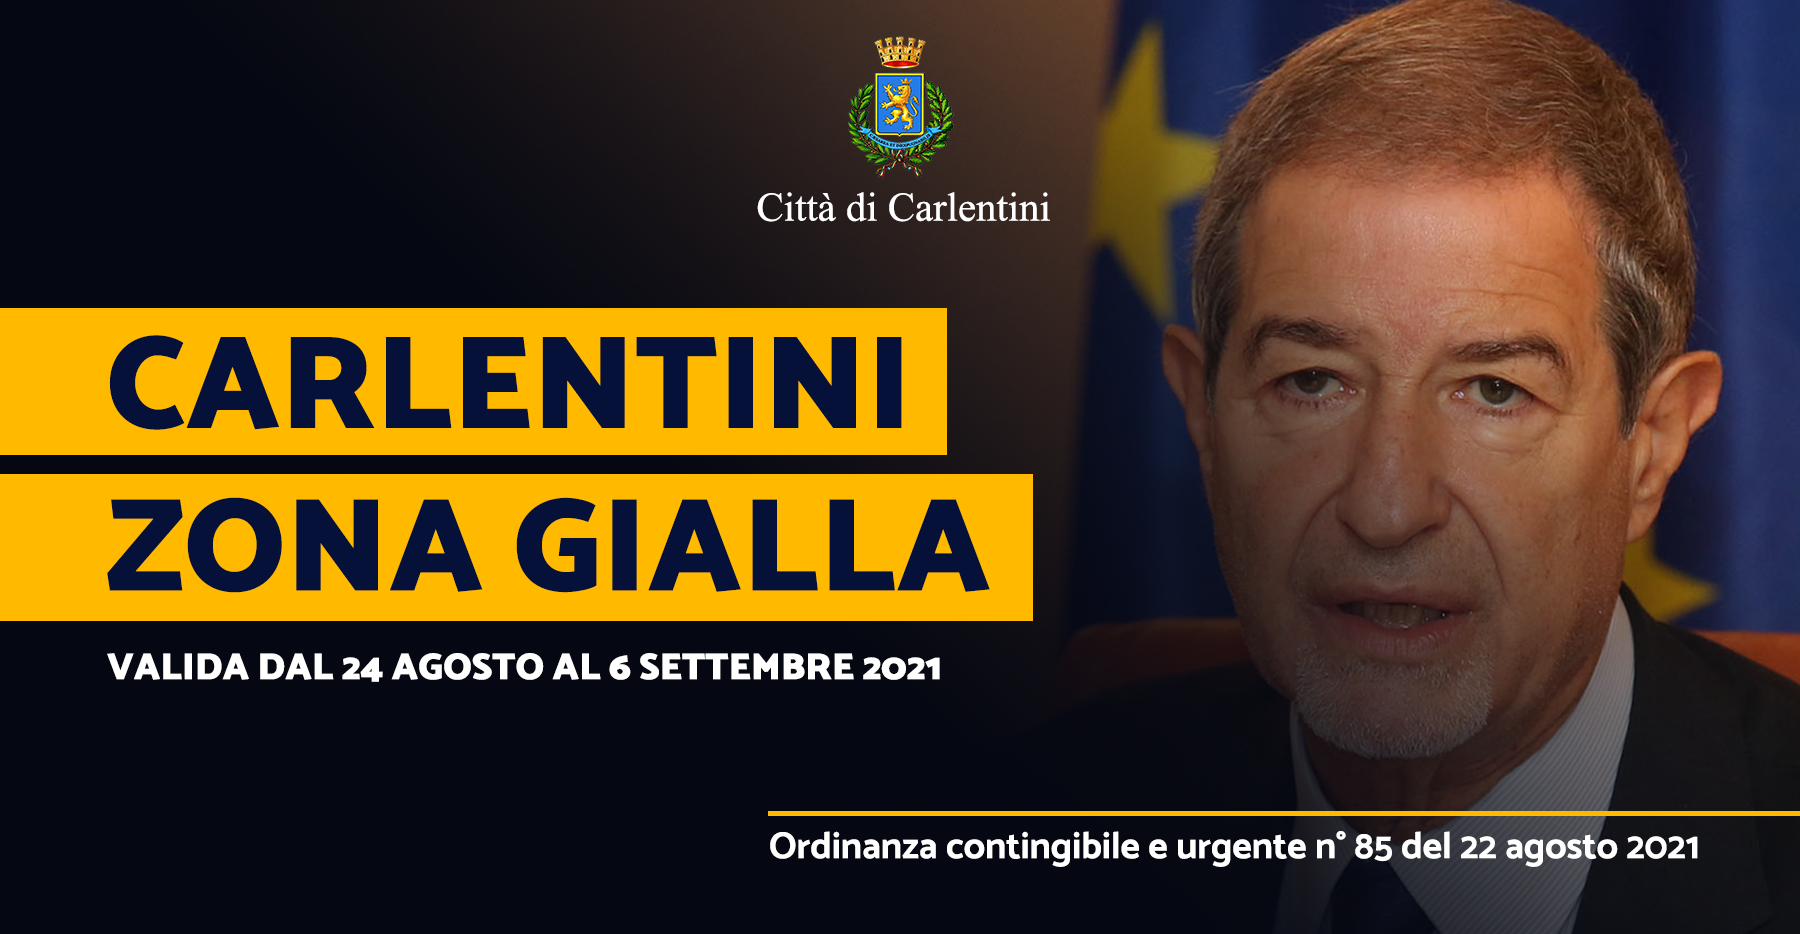 Carlentini “Zona Gialla”: Ordinanza Regionale n. 85 del 22 agosto 2021